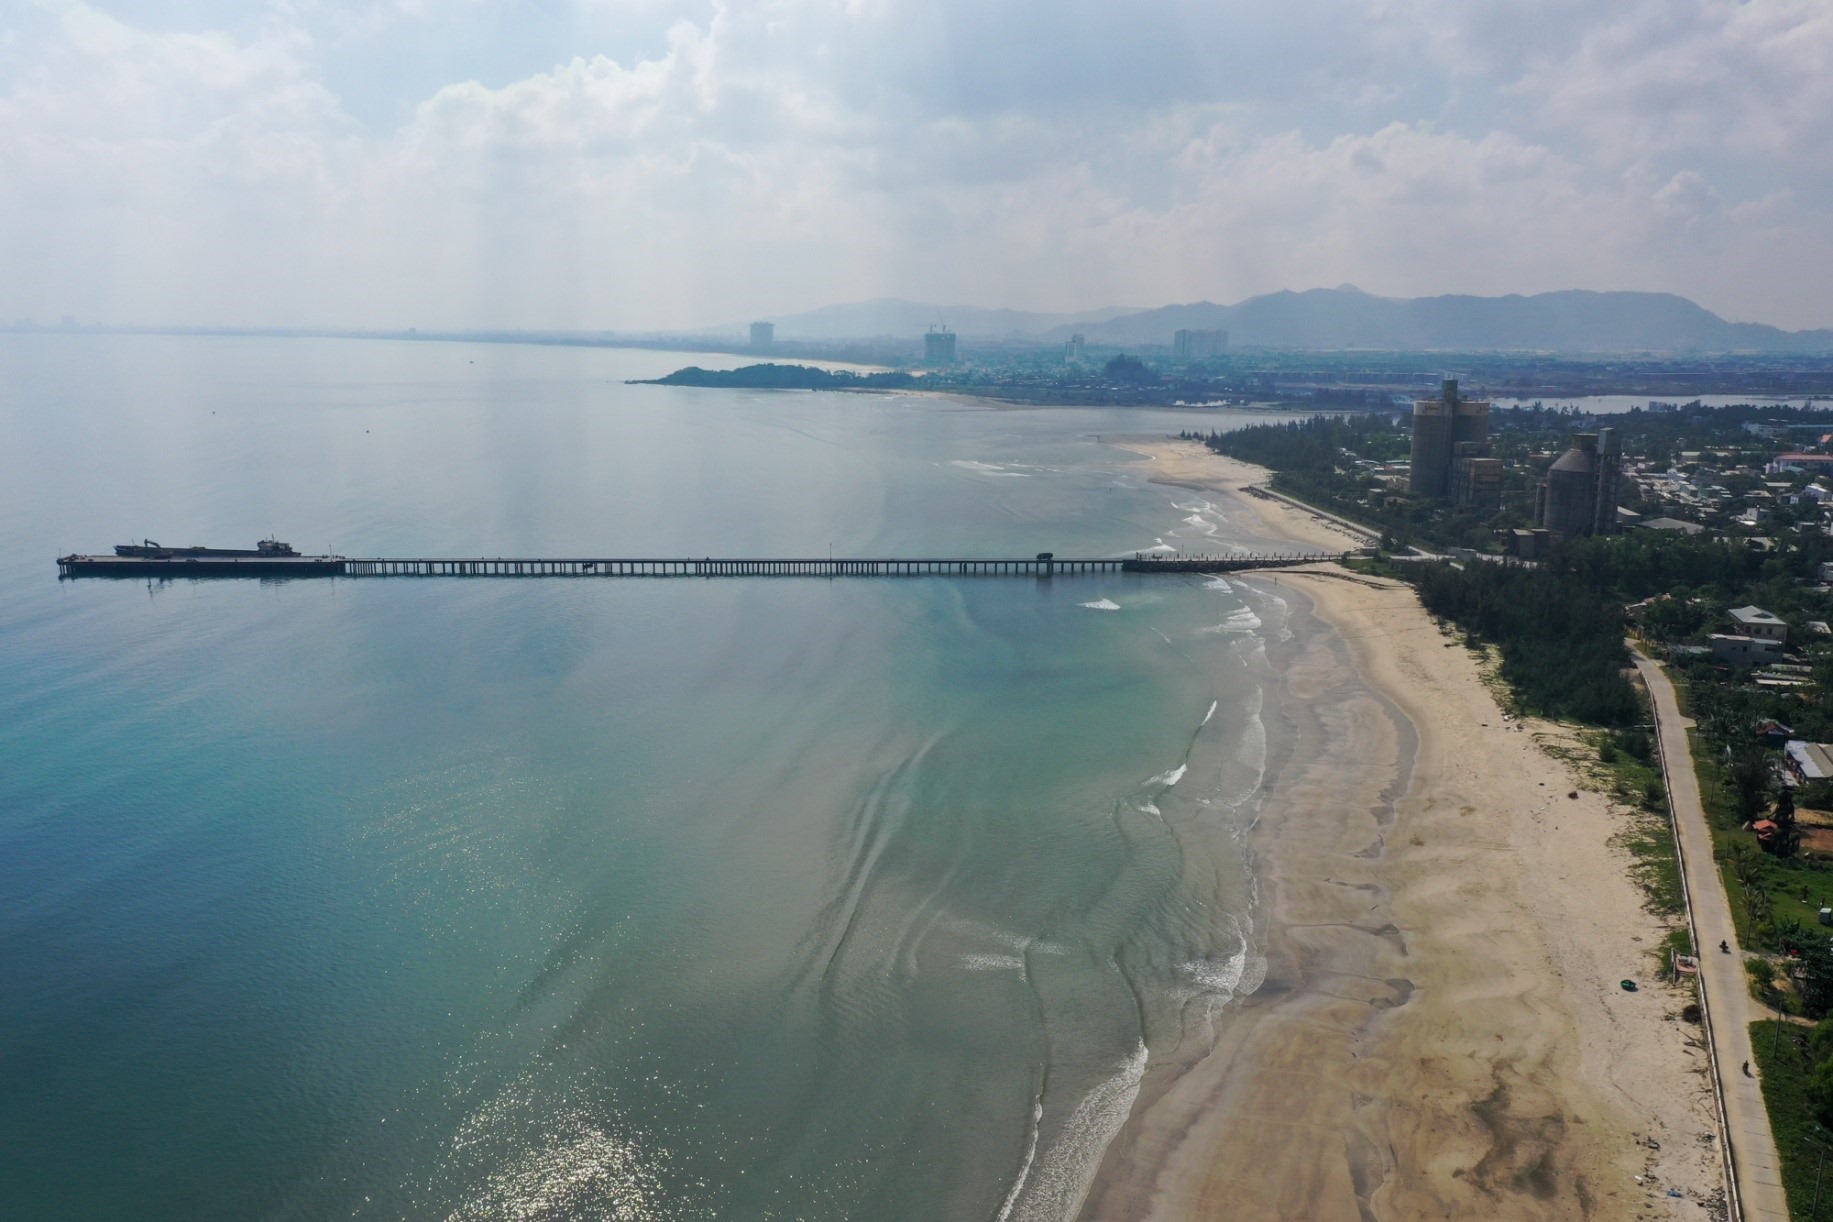 Toàn cảnh vị trí sắp khởi công xây dựng cảng biển 3.400 tỉ đồng ở Đà Nẵng-4